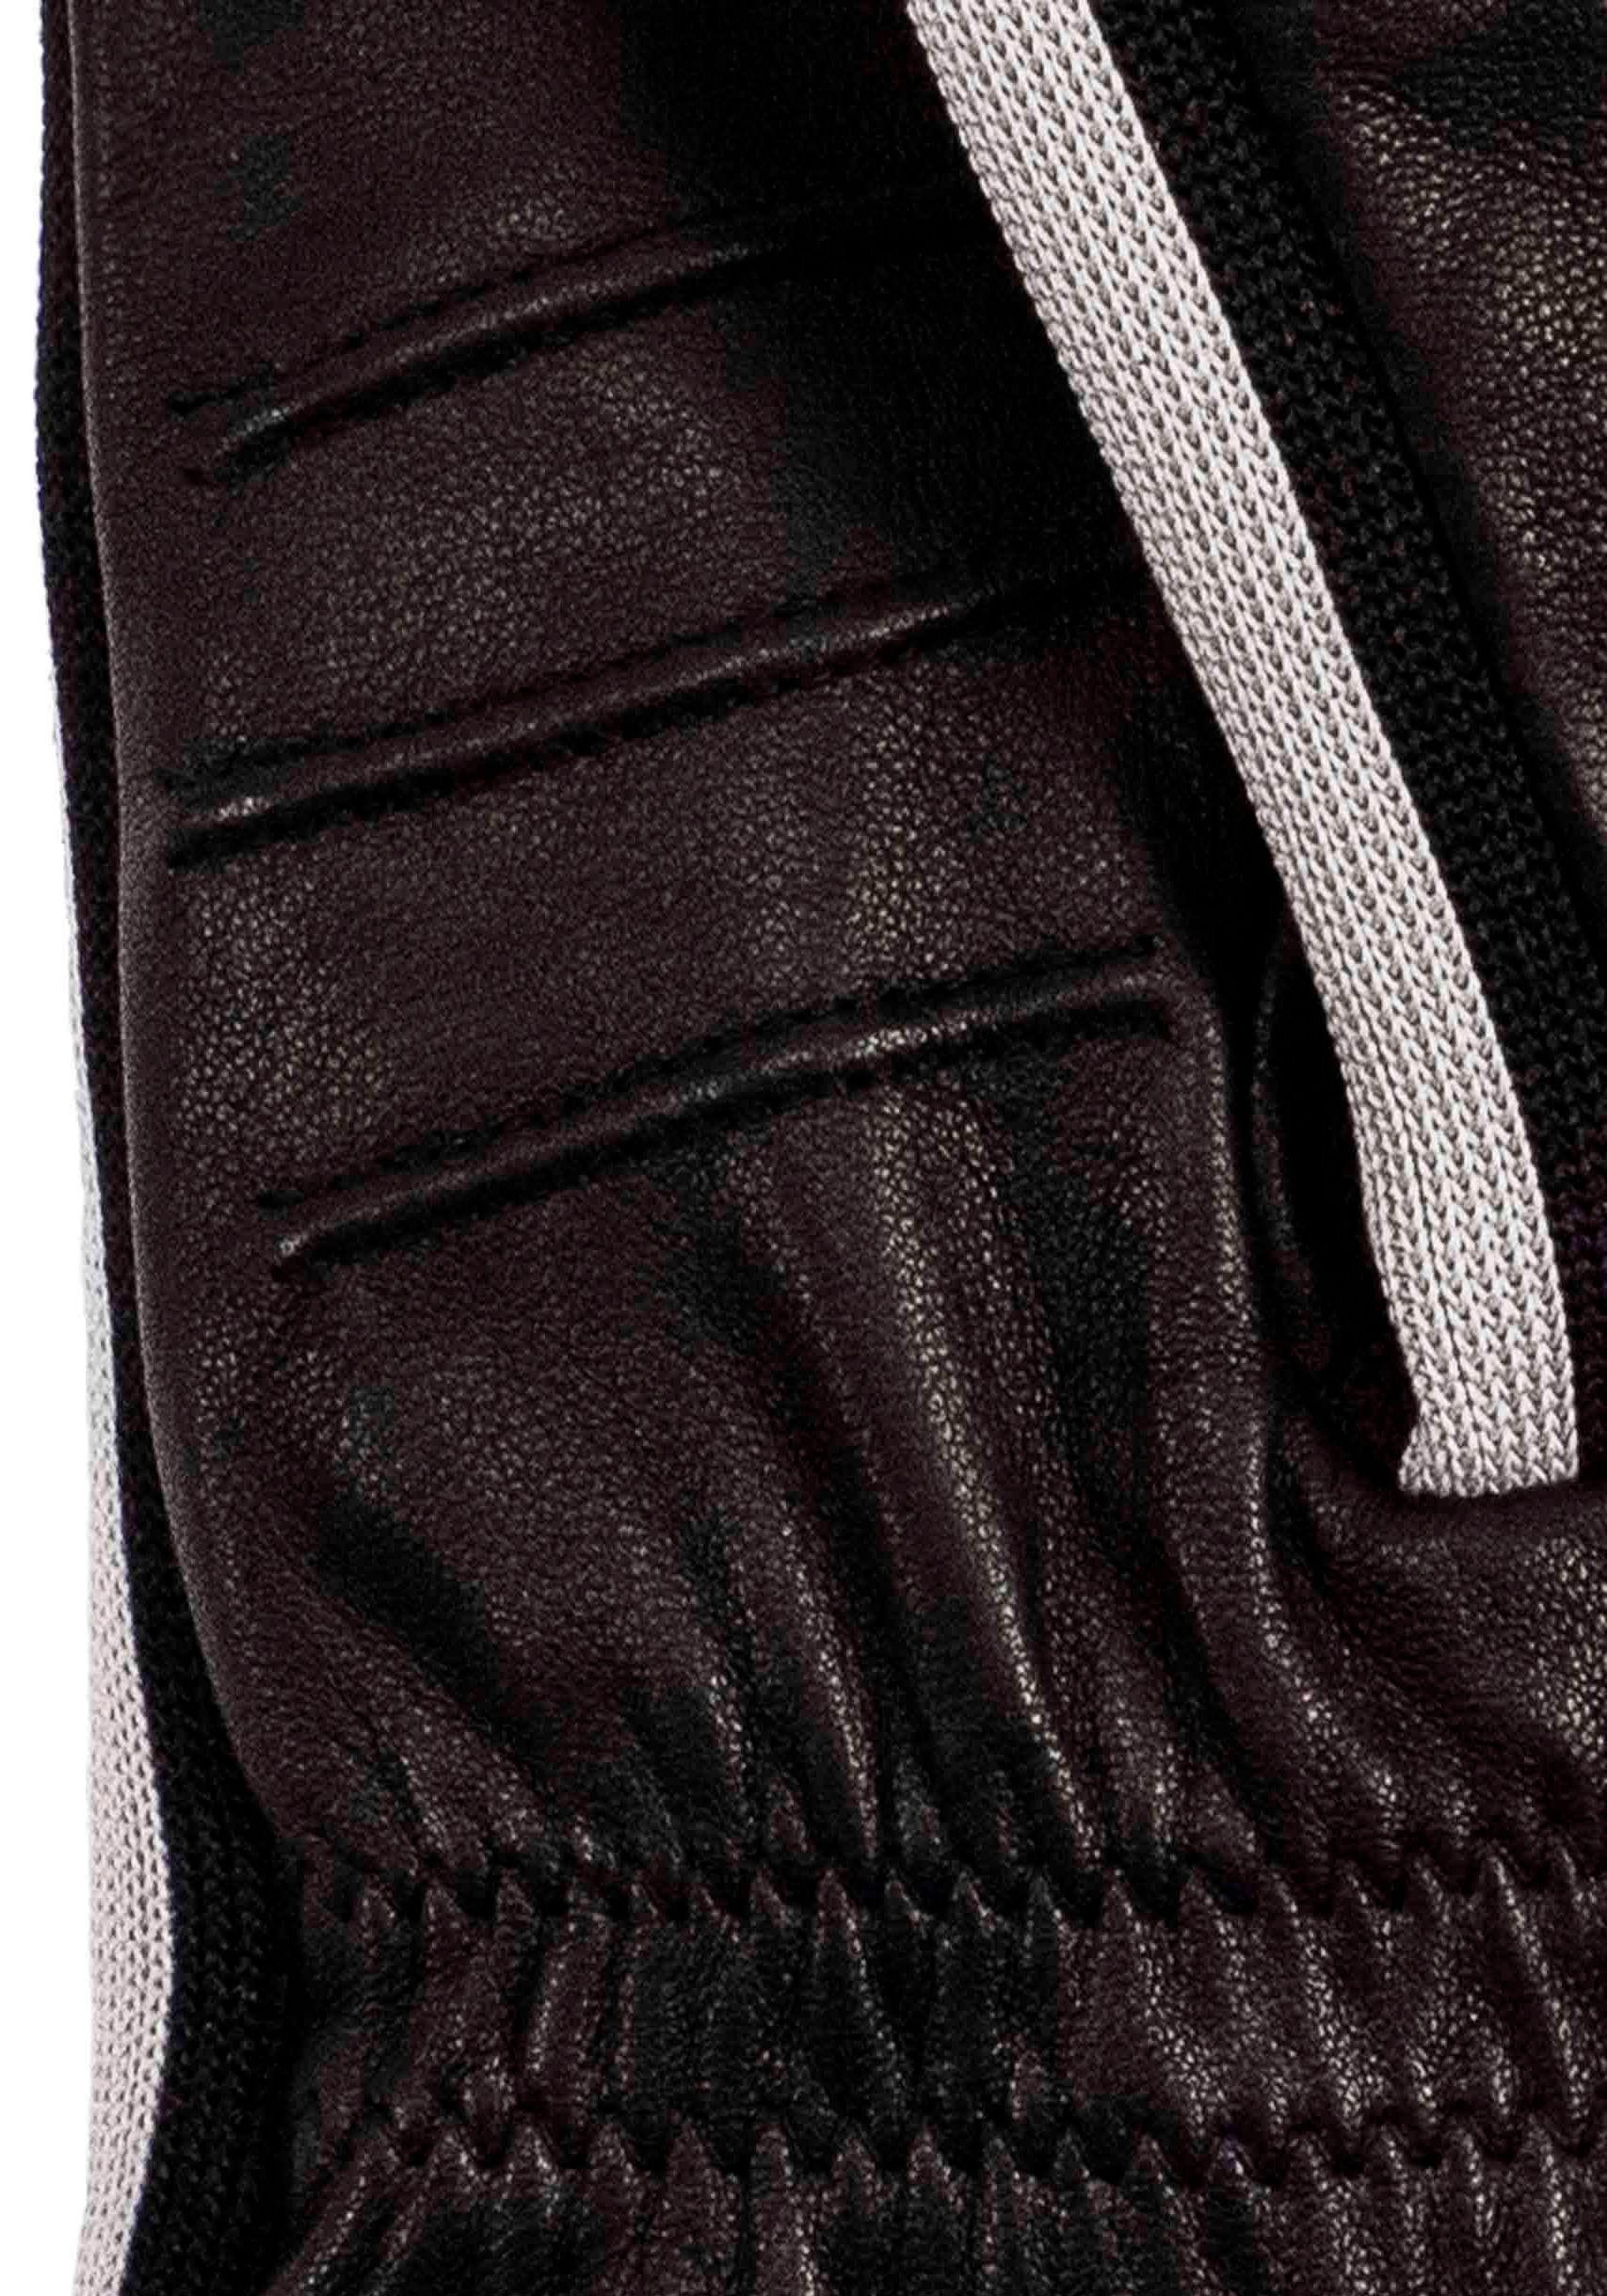 Sneaker- Touchfunktion Jack im sportliches black Look Design KESSLER Lederhandschuhe mit Touch